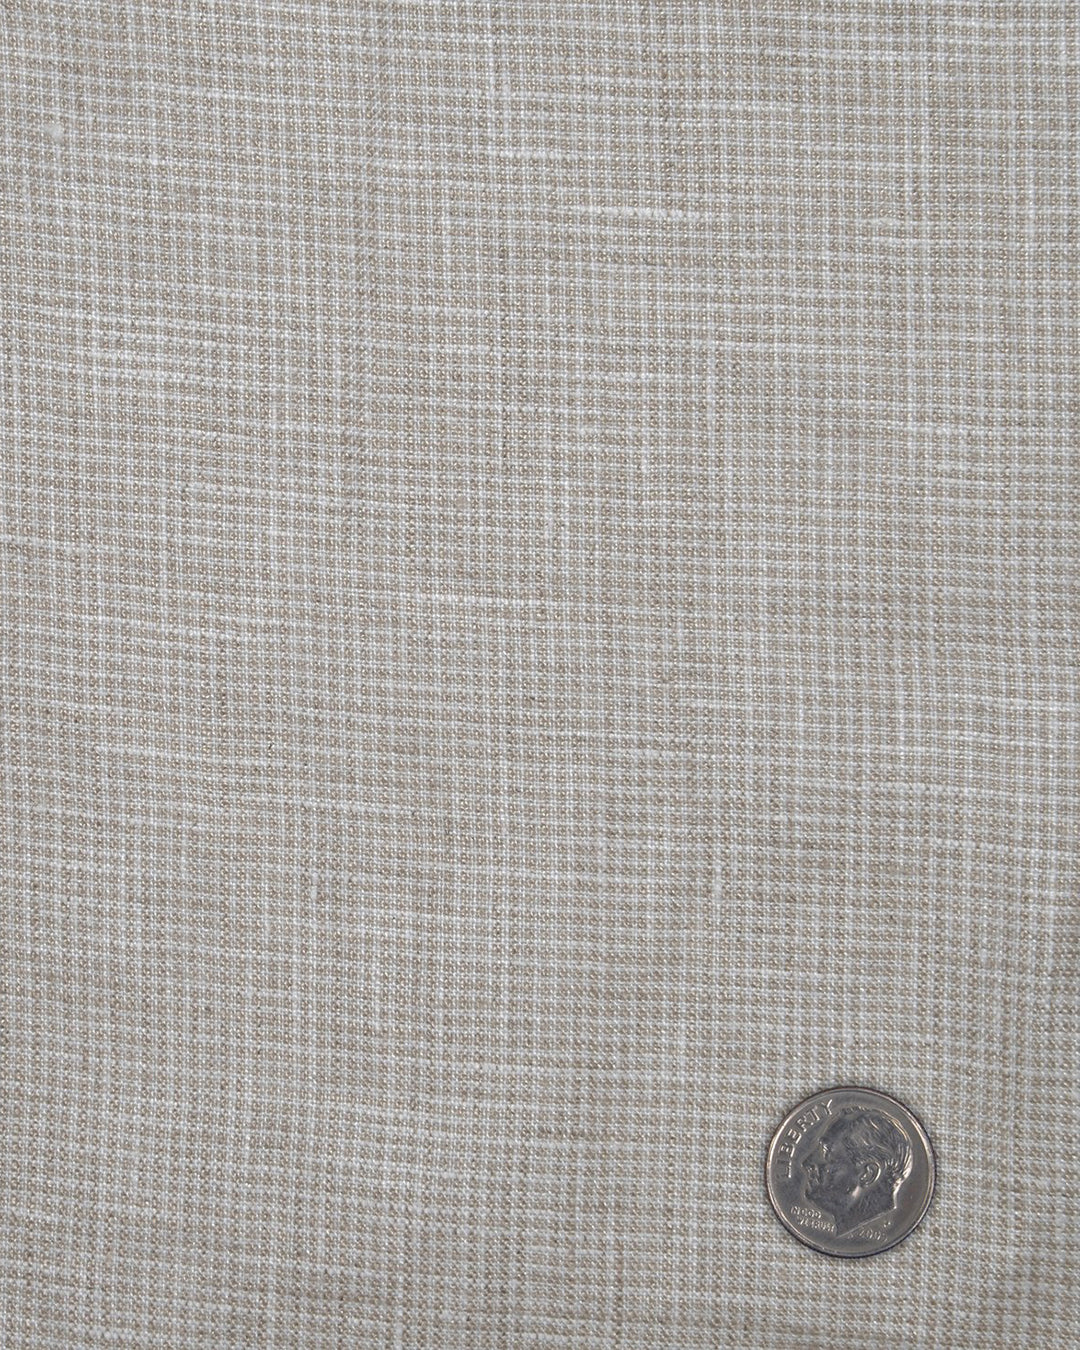 Irish Linen: Ecru White Mini Houndstooth Checks